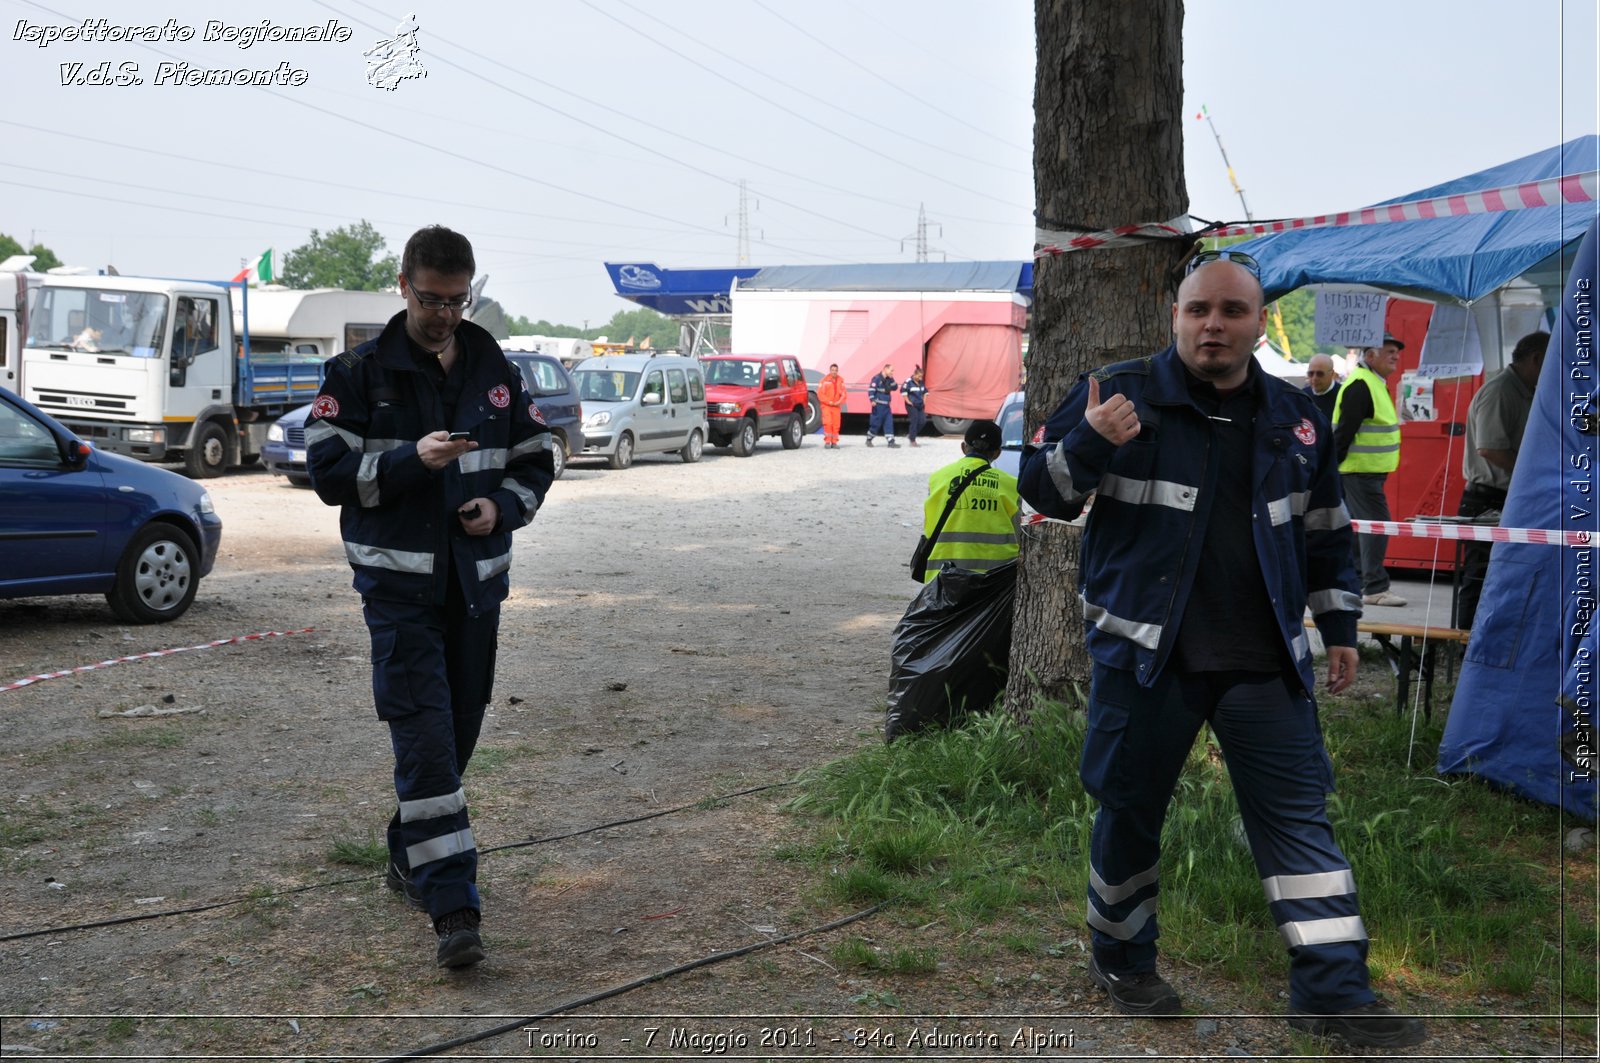 Torino  - 7 Maggio 2011 - 84a Adunata Nazionale Alpini -  Croce Rossa Italiana - Ispettorato Regionale Volontari del Soccorso Piemonte